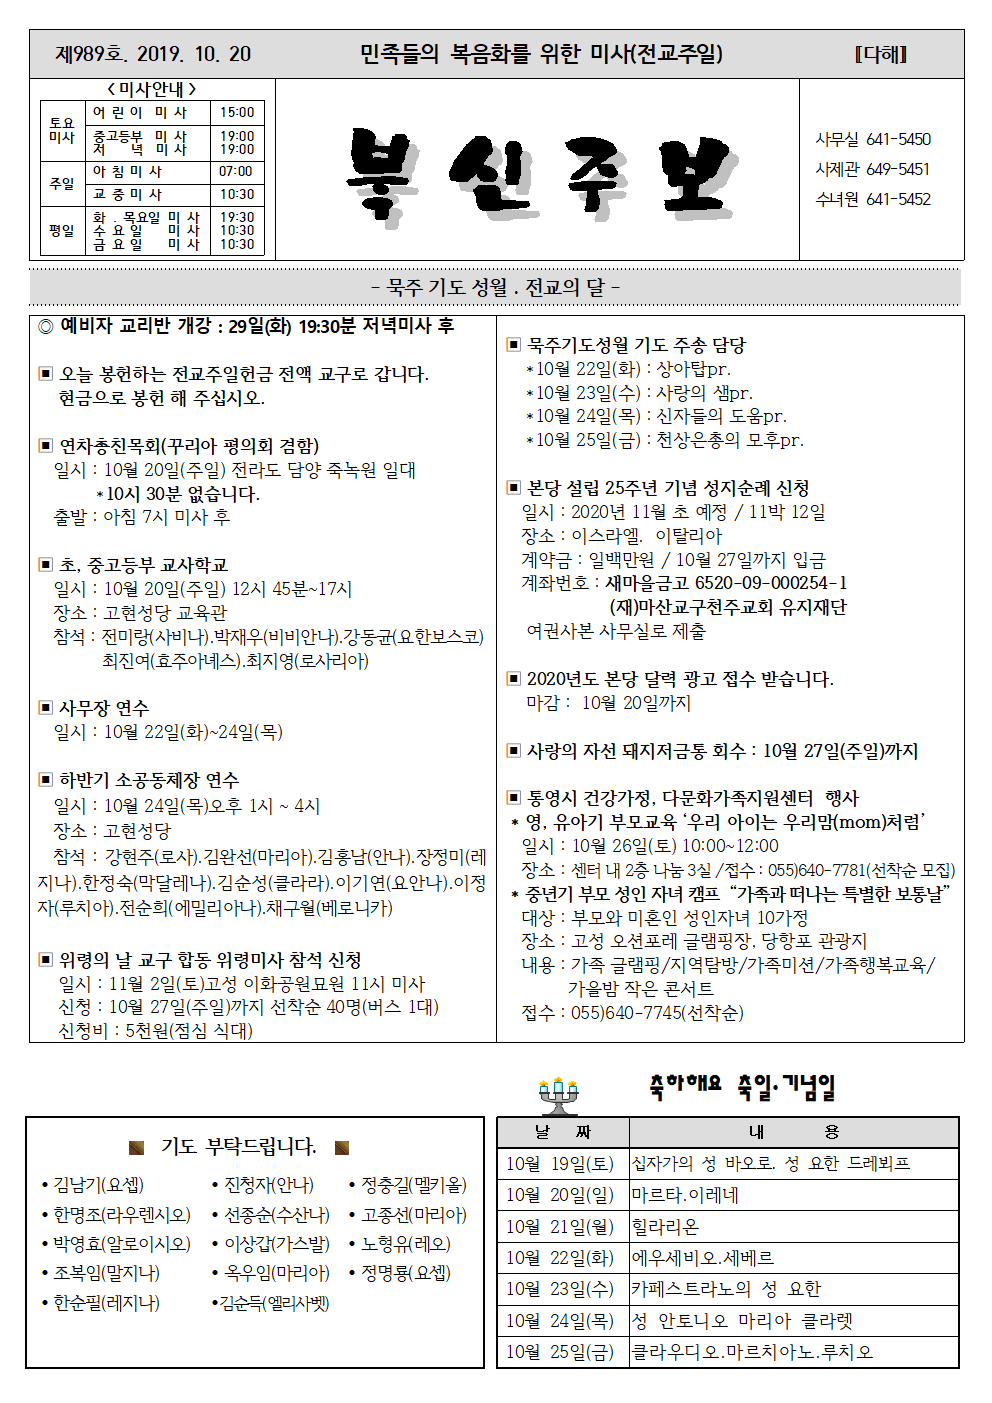 10.20 민족들의 복음화를 위한 미사001.png